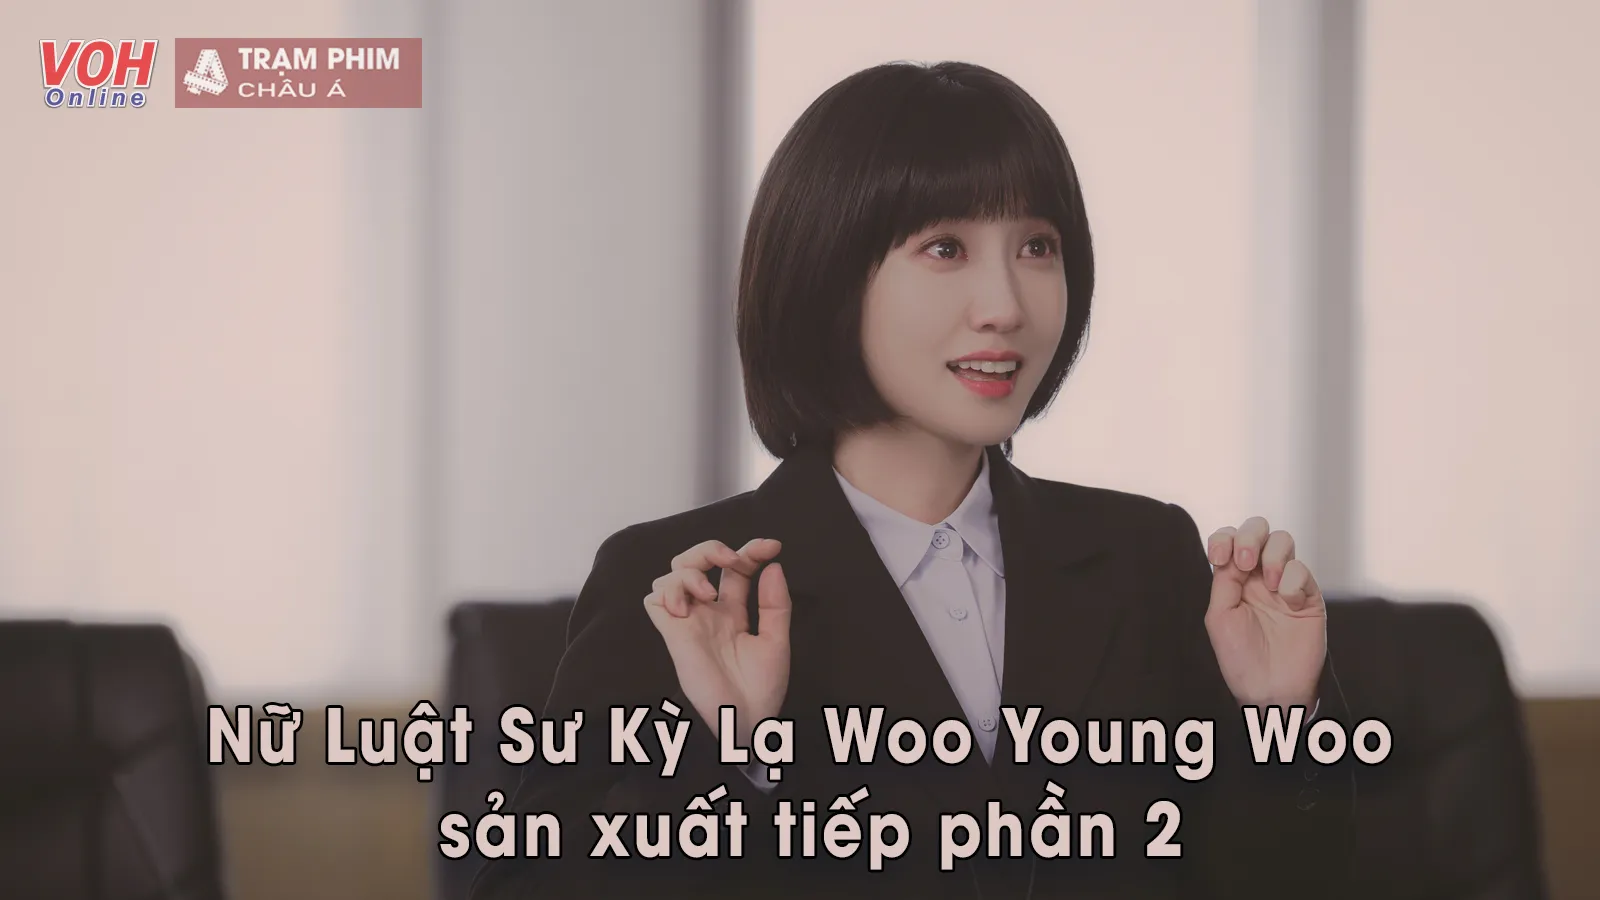 Nữ Luật Sư Kỳ Lạ Woo Young Woo xác nhận sẽ có phần 2